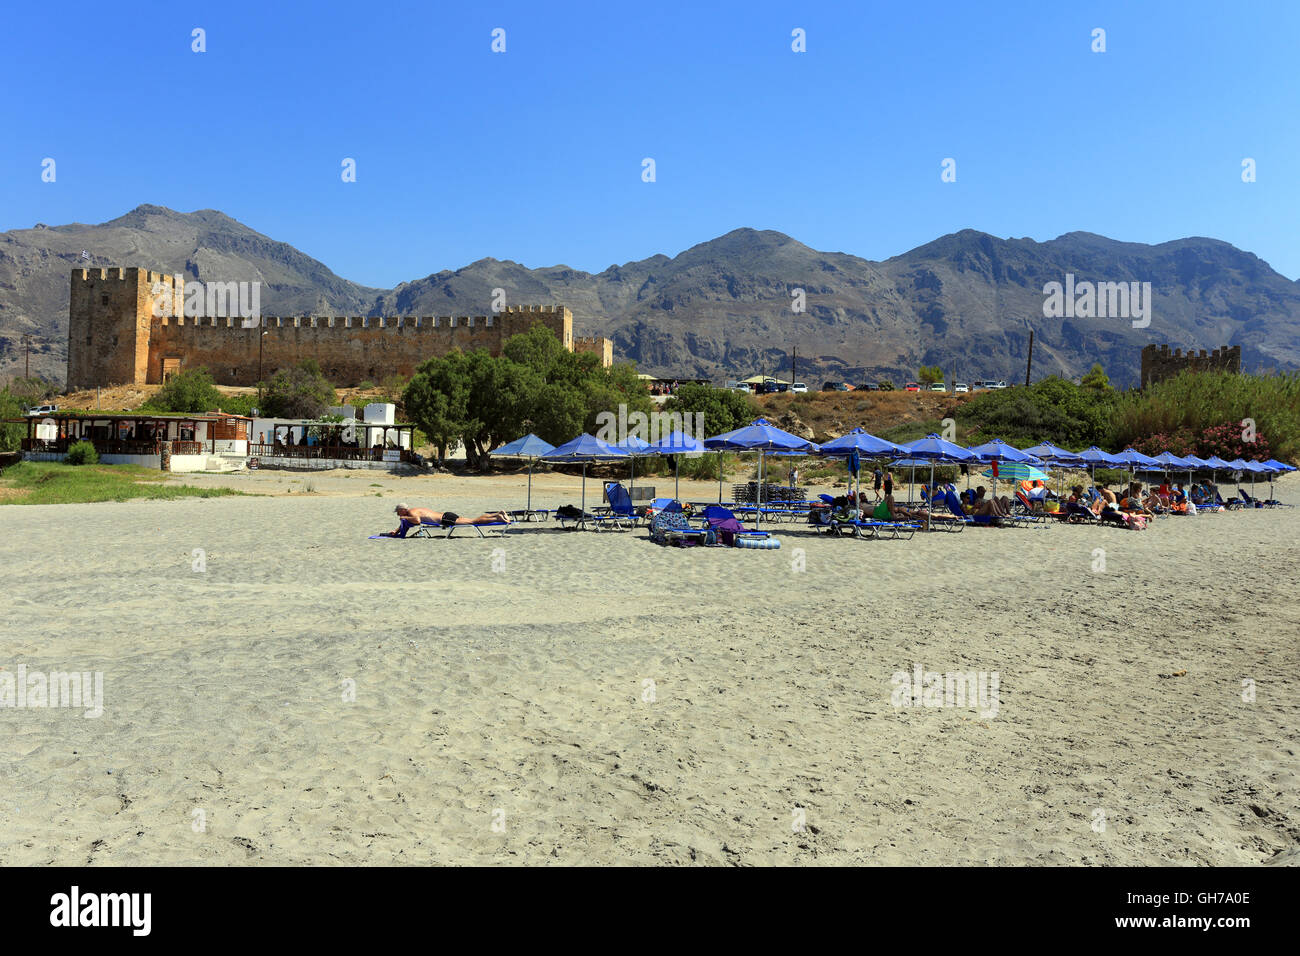 FRANGOKASTELLO, CRETA - luglio 3, 2016: turisti rilassarsi sulla spiaggia accanto al castello di Frangocastello, a sud di Creta. Visitatore numb Foto Stock